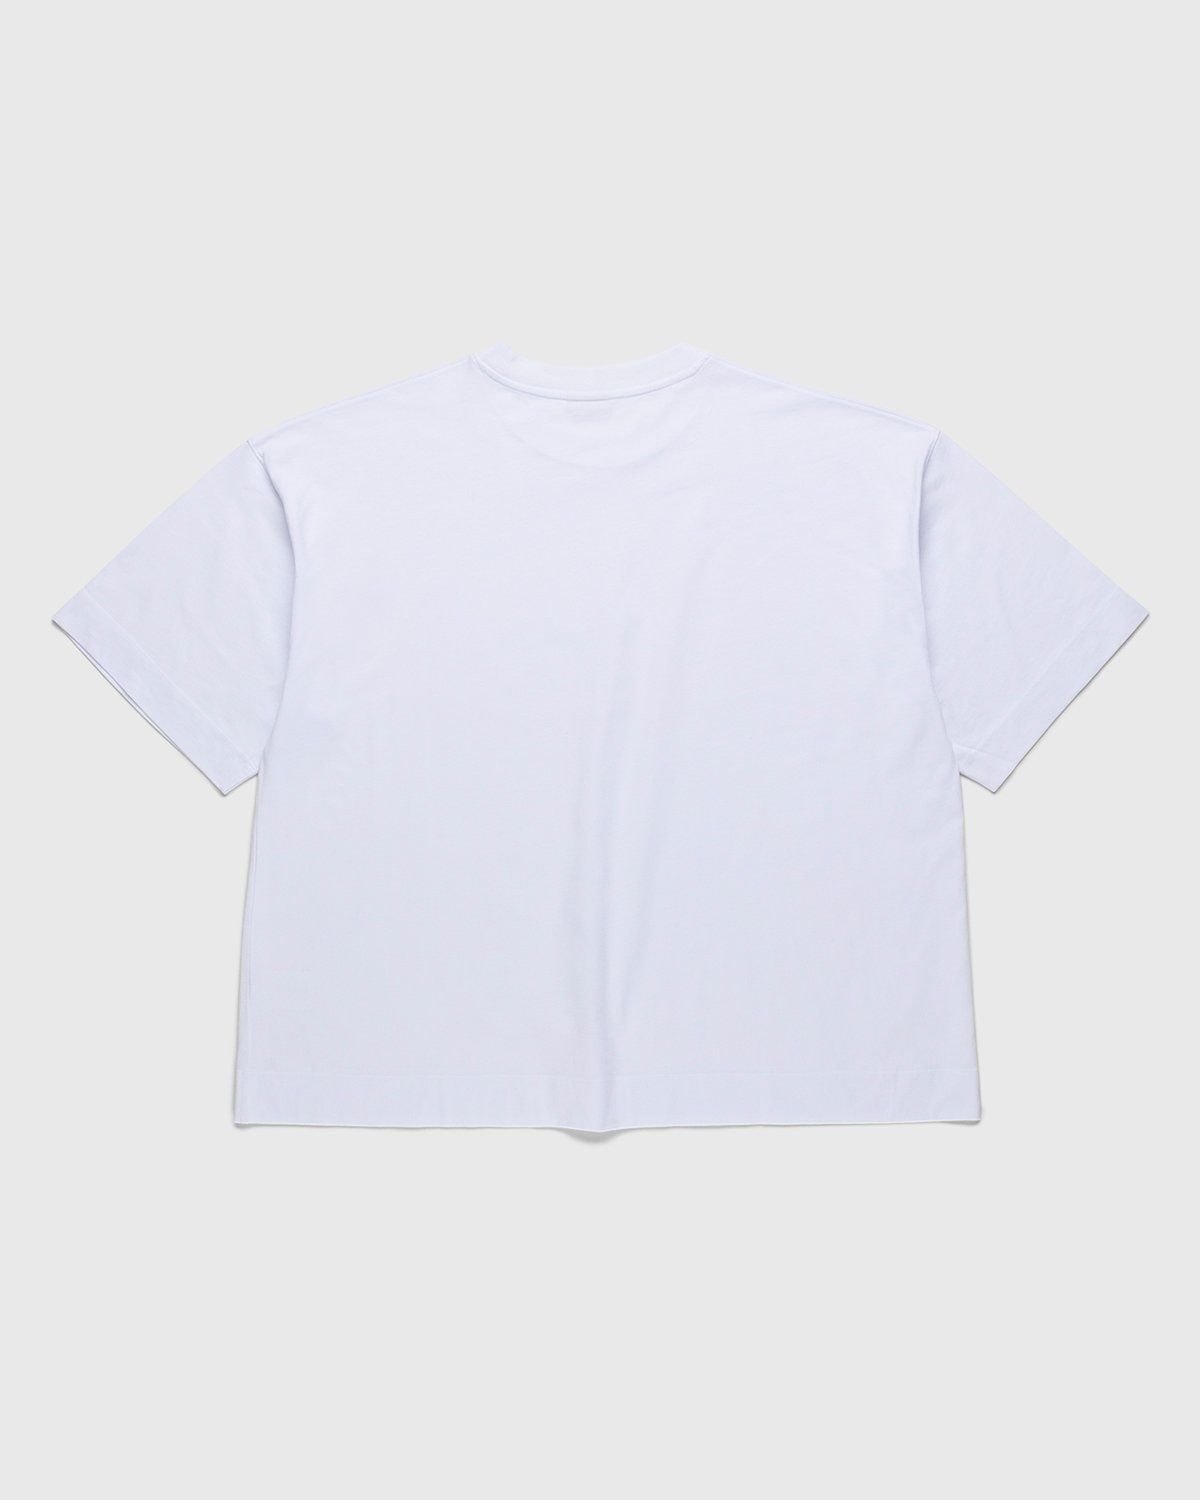 Dries van Noten – Hen Oversized T-Shirt White - T-Shirts - White - Image 1